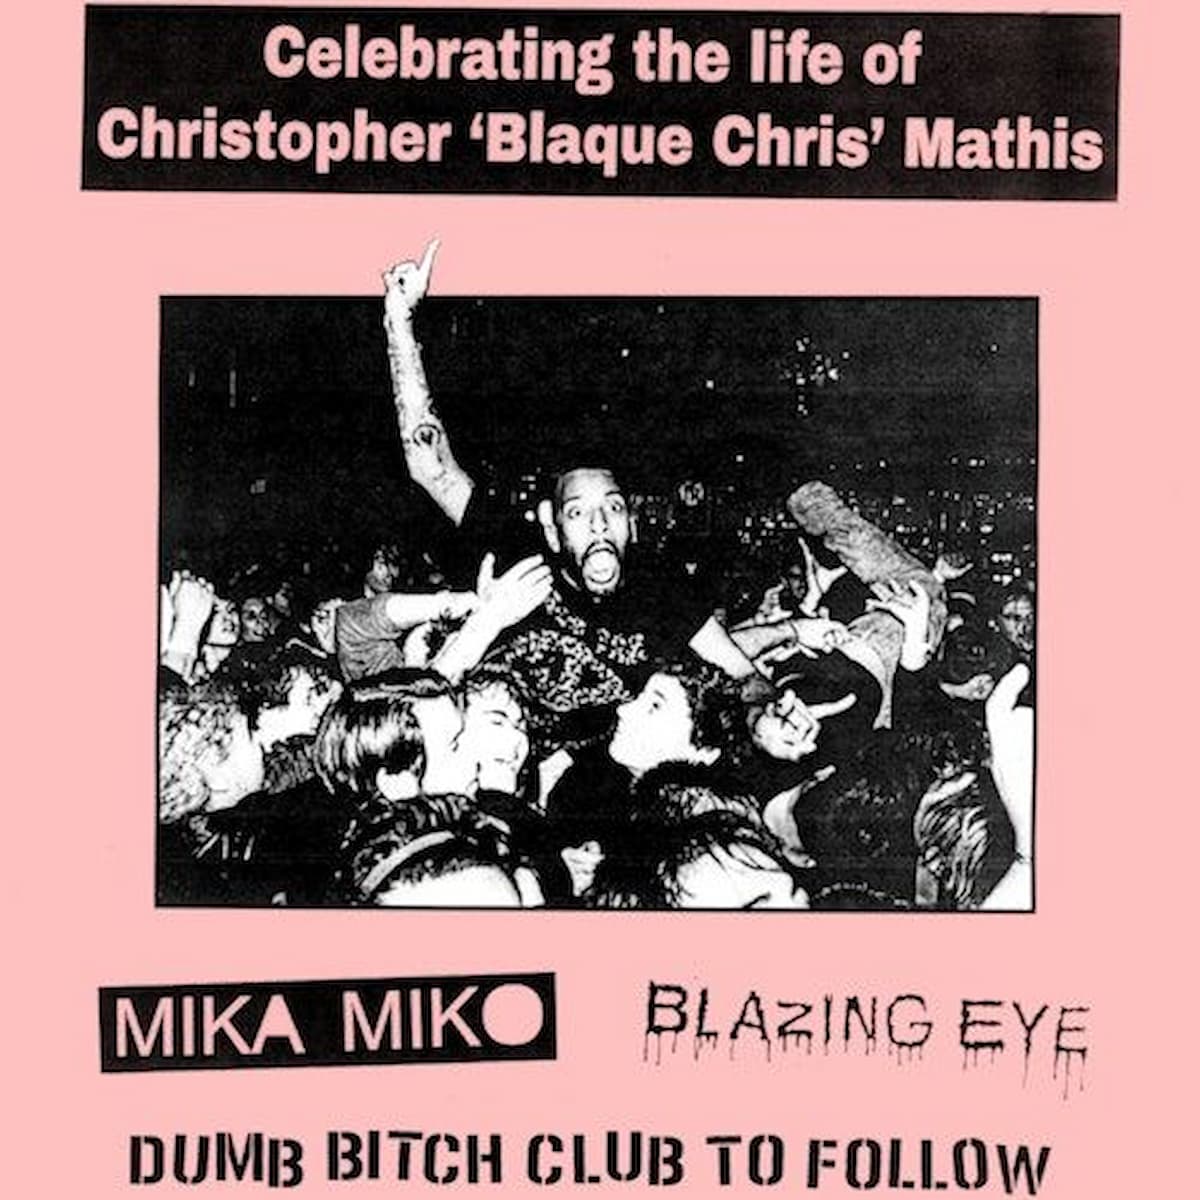 Mika Miko / Blazing Eye: Celebrating the Life of Blaque Chris